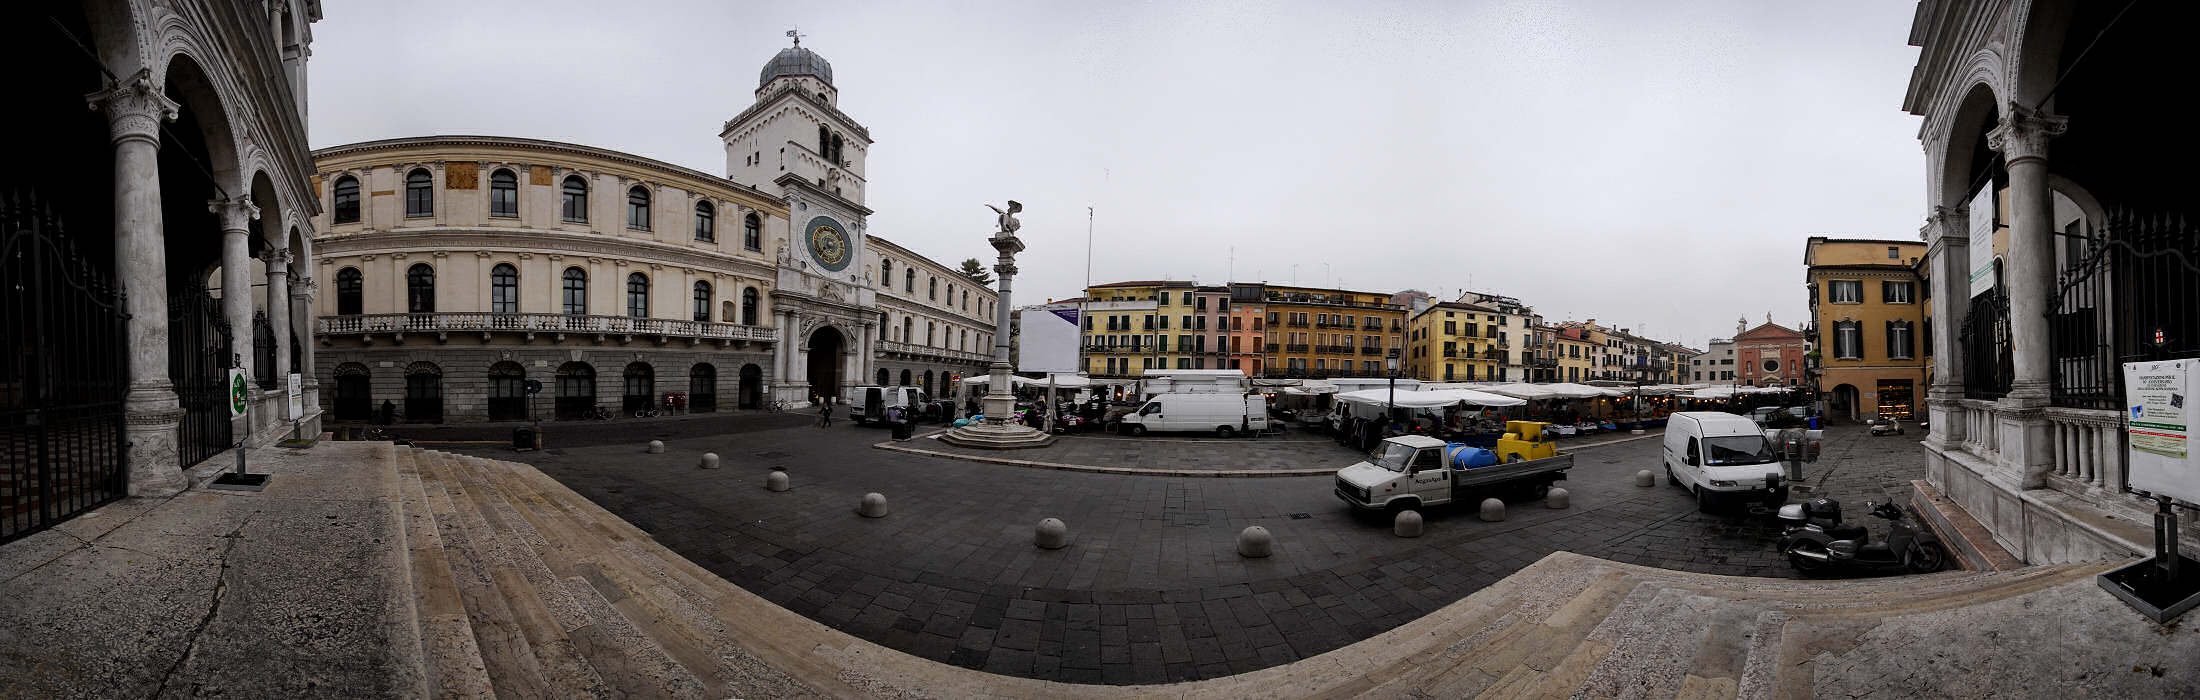 Padova - piazza dei Signori e torre dell'Orologio